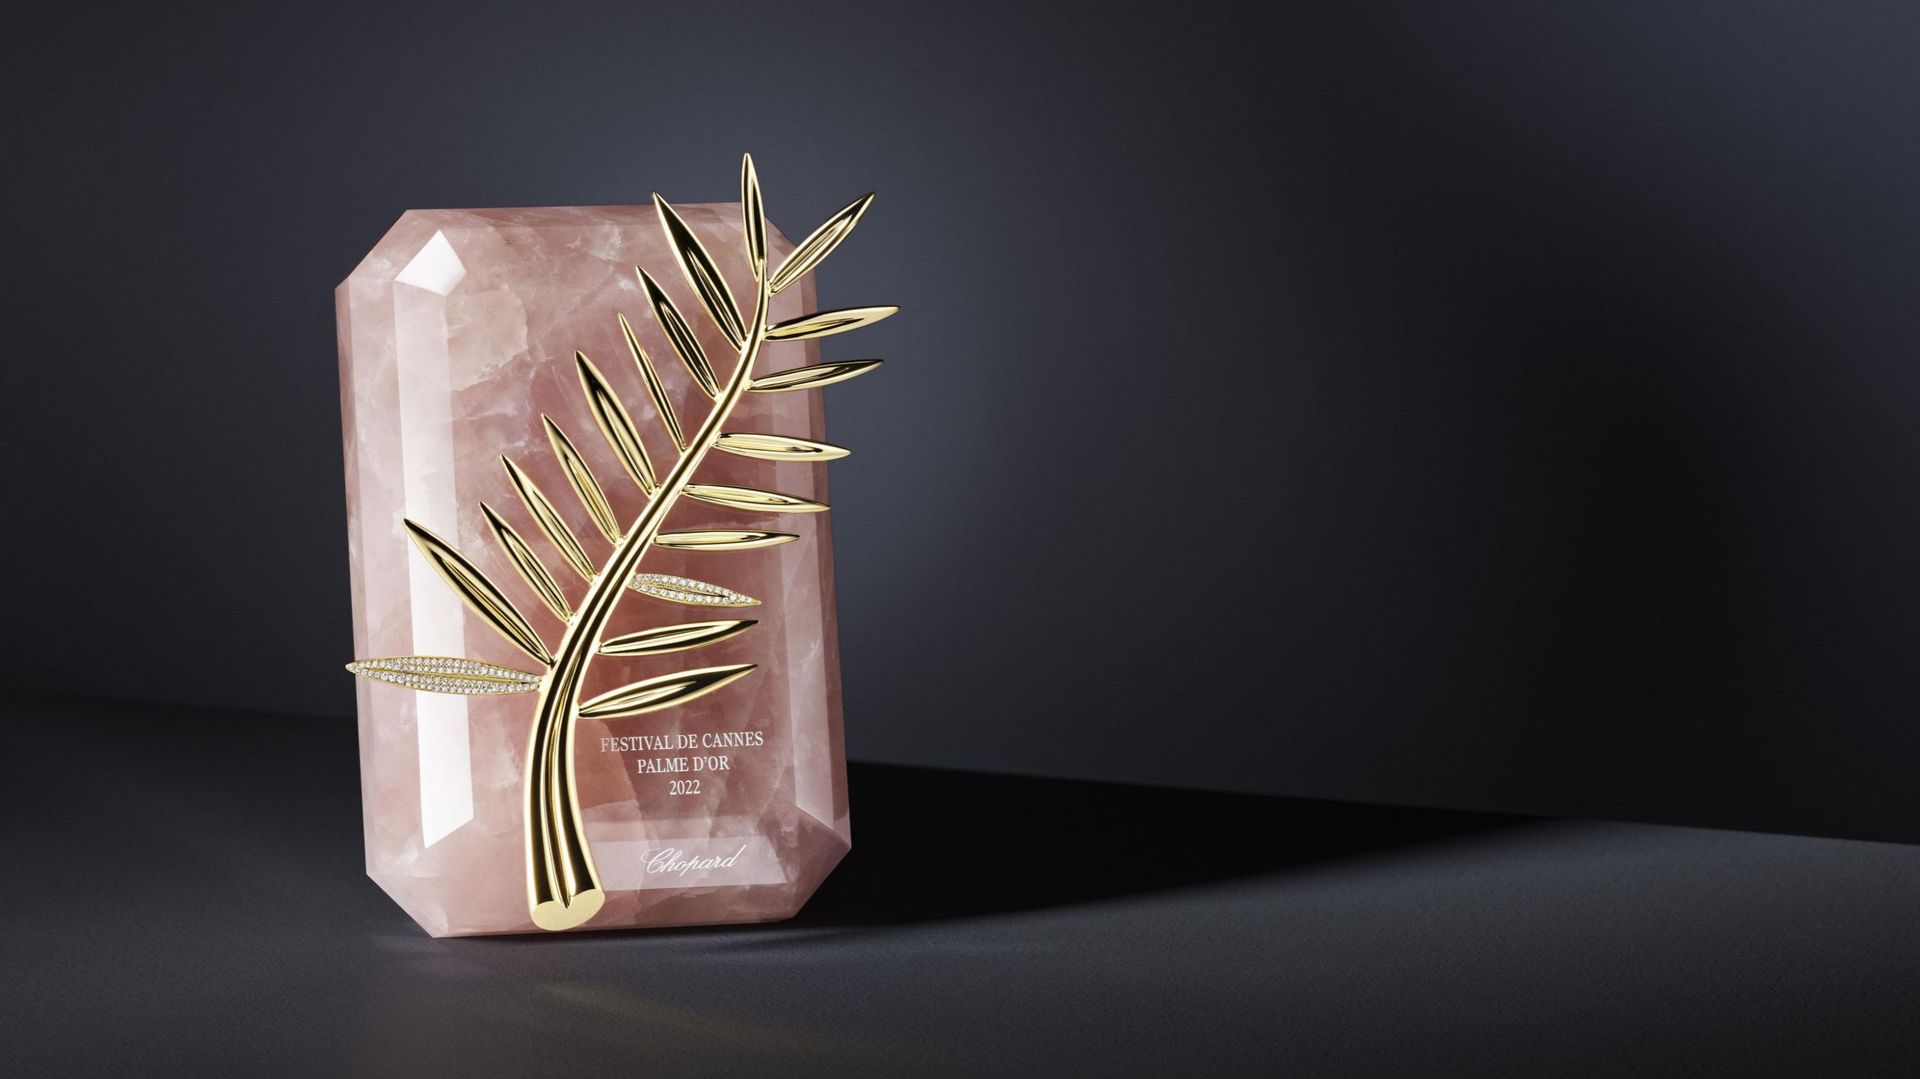 Palme d’or inédite pour ce 75e festival de Cannes, réalisé par Chopard avec du quartz rose.